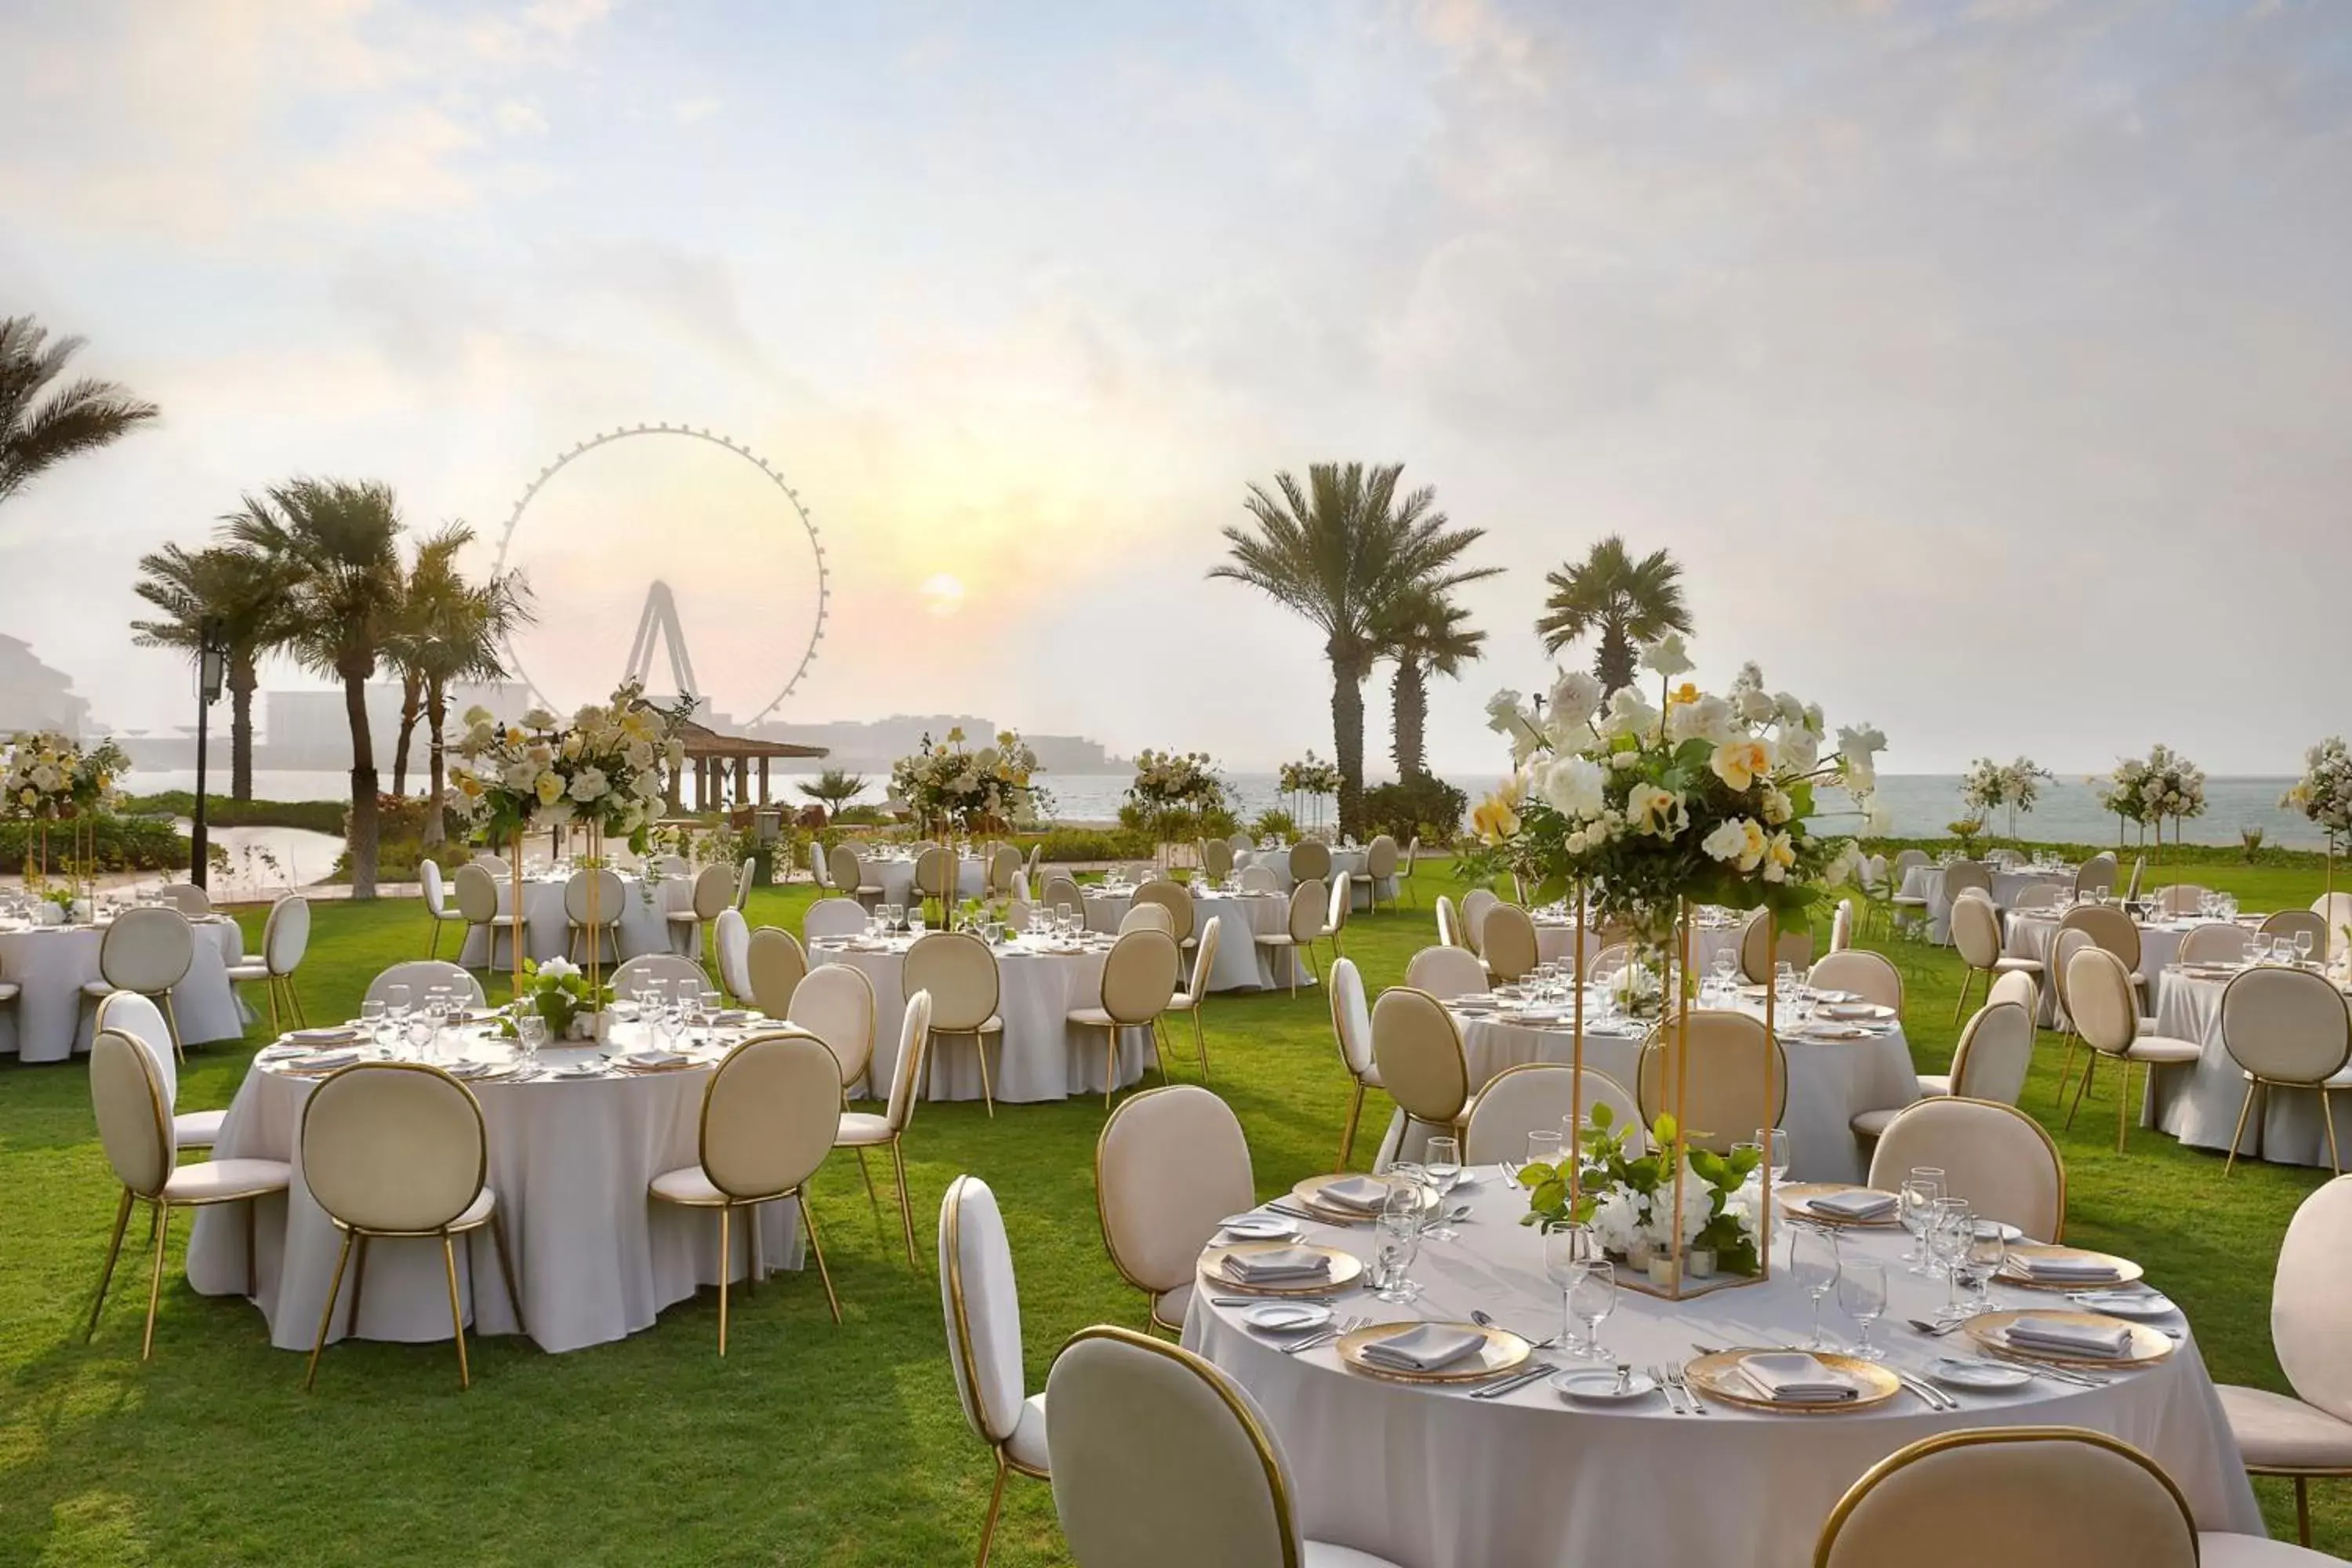 Banquet/Function facilities, Banquet Facilities in The Ritz-Carlton, Dubai